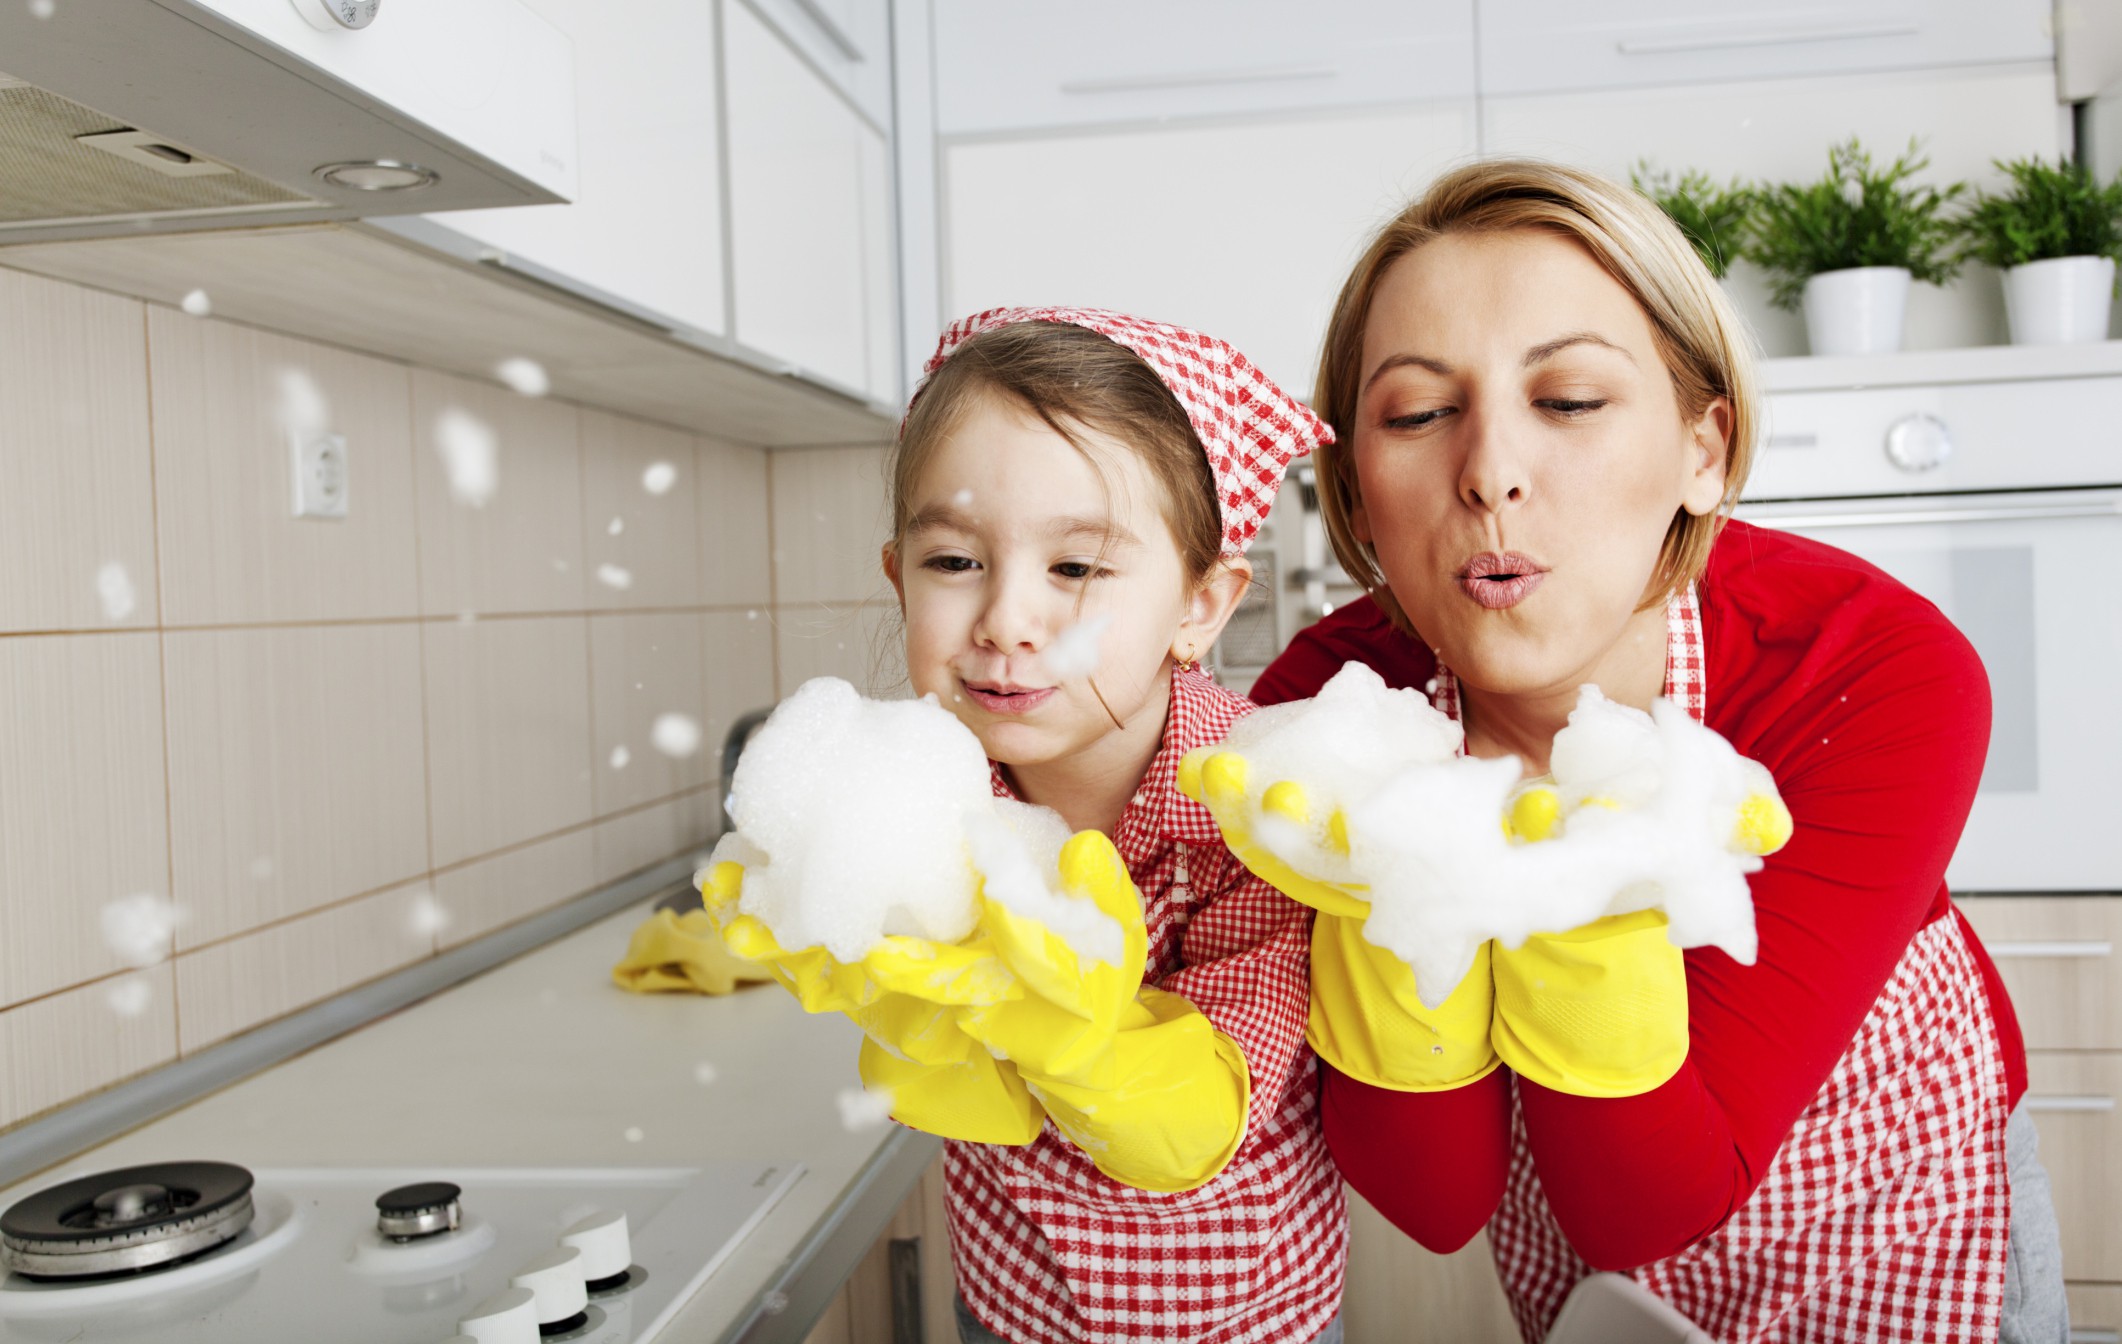 Какви домакински задължения да възложиш на децата си спрямо възрастта им